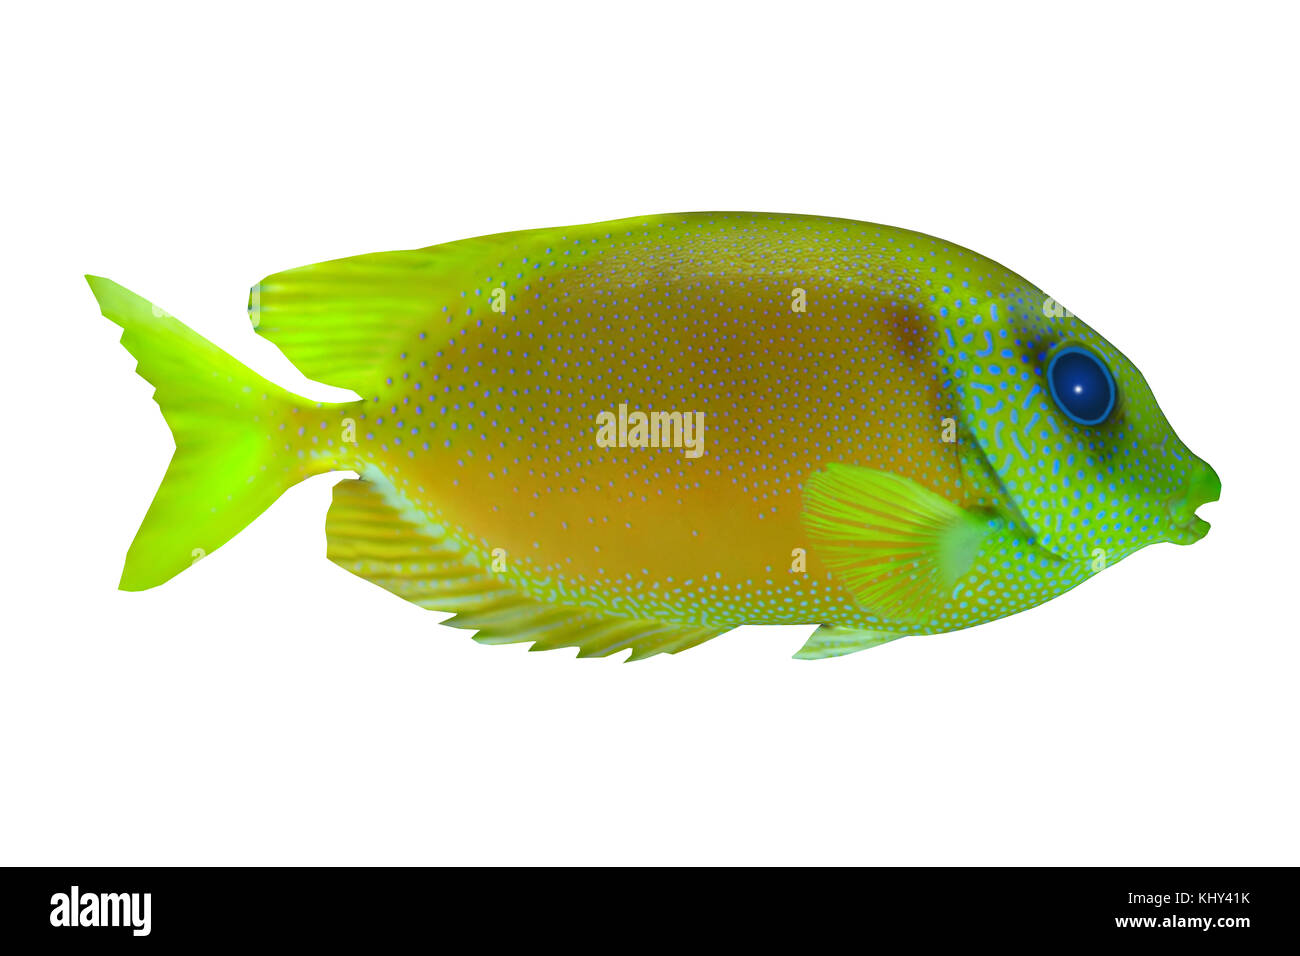 Lemonpeel Angelfish - The Lemonpeel Angelfish is a saltwater species reef fish in tropical regions of Indo-Pacific oceans. Stock Photo